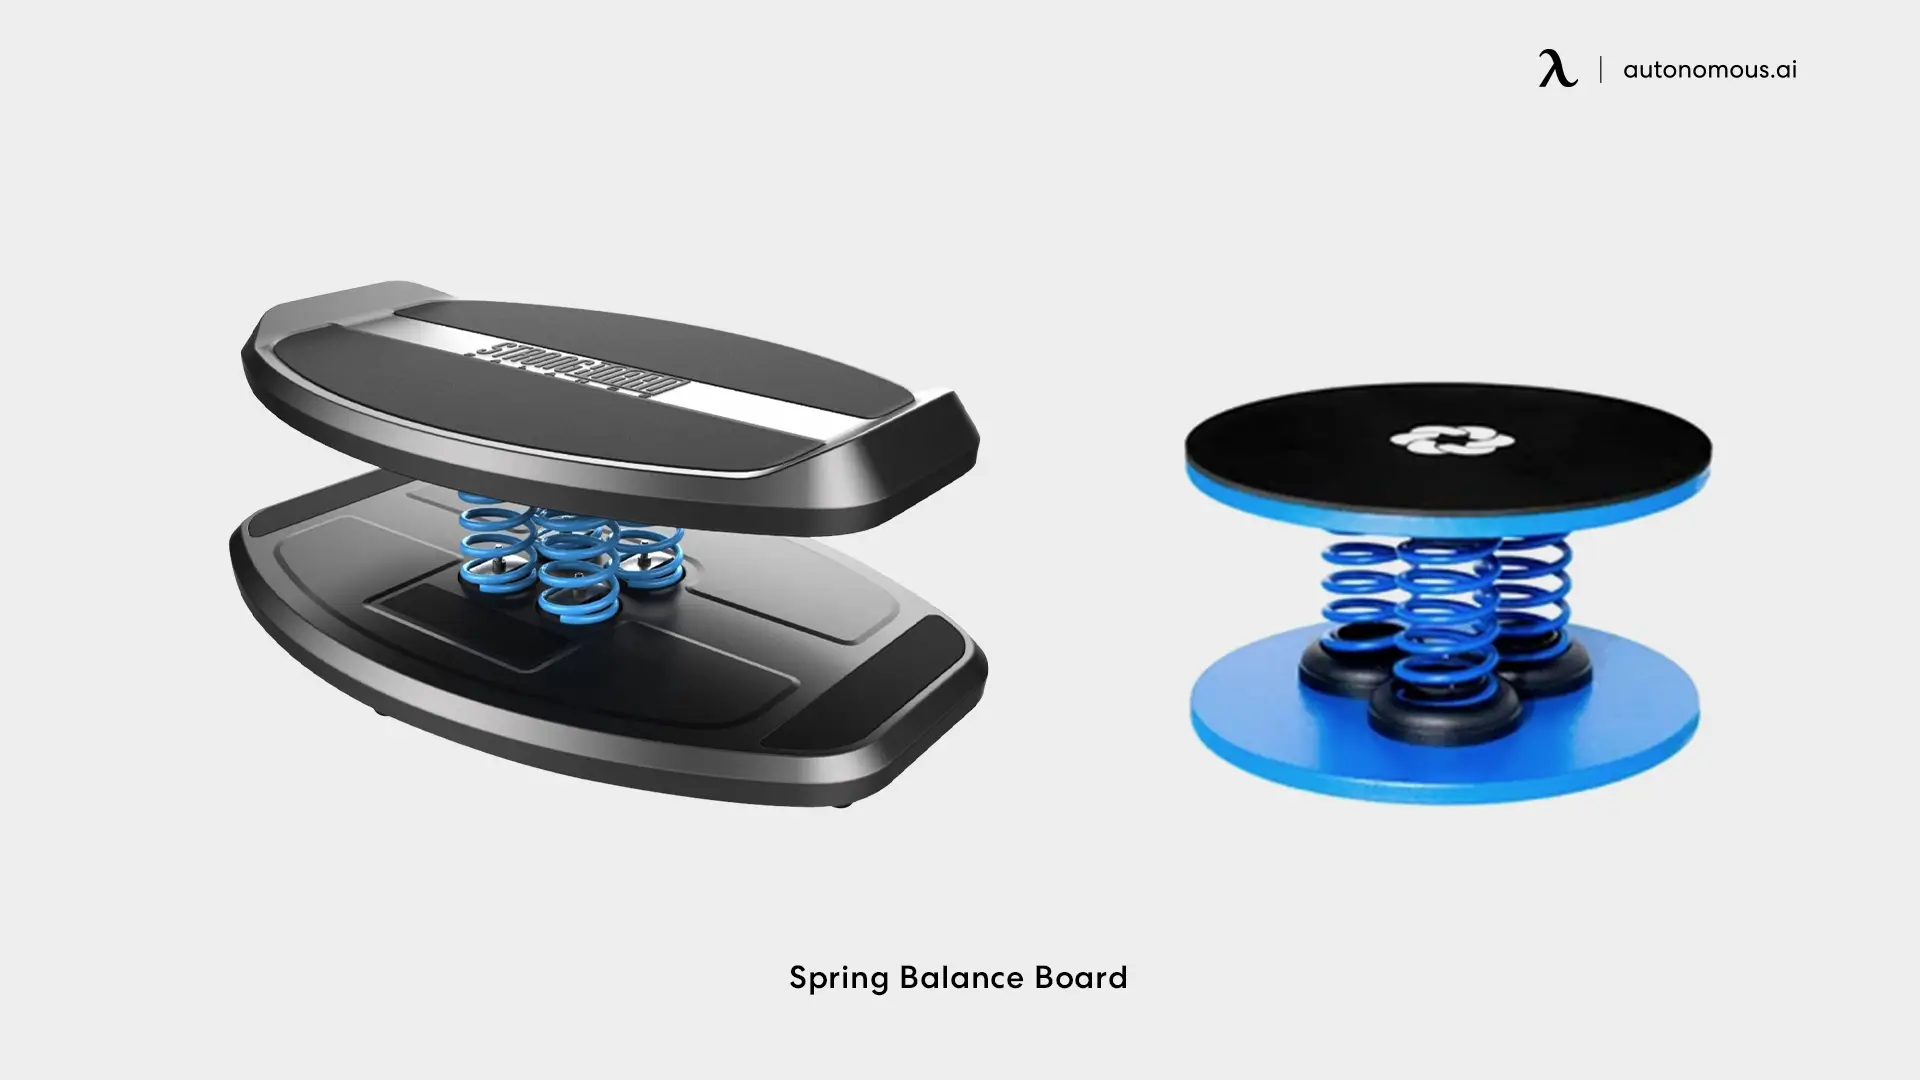 Spring Balance Board